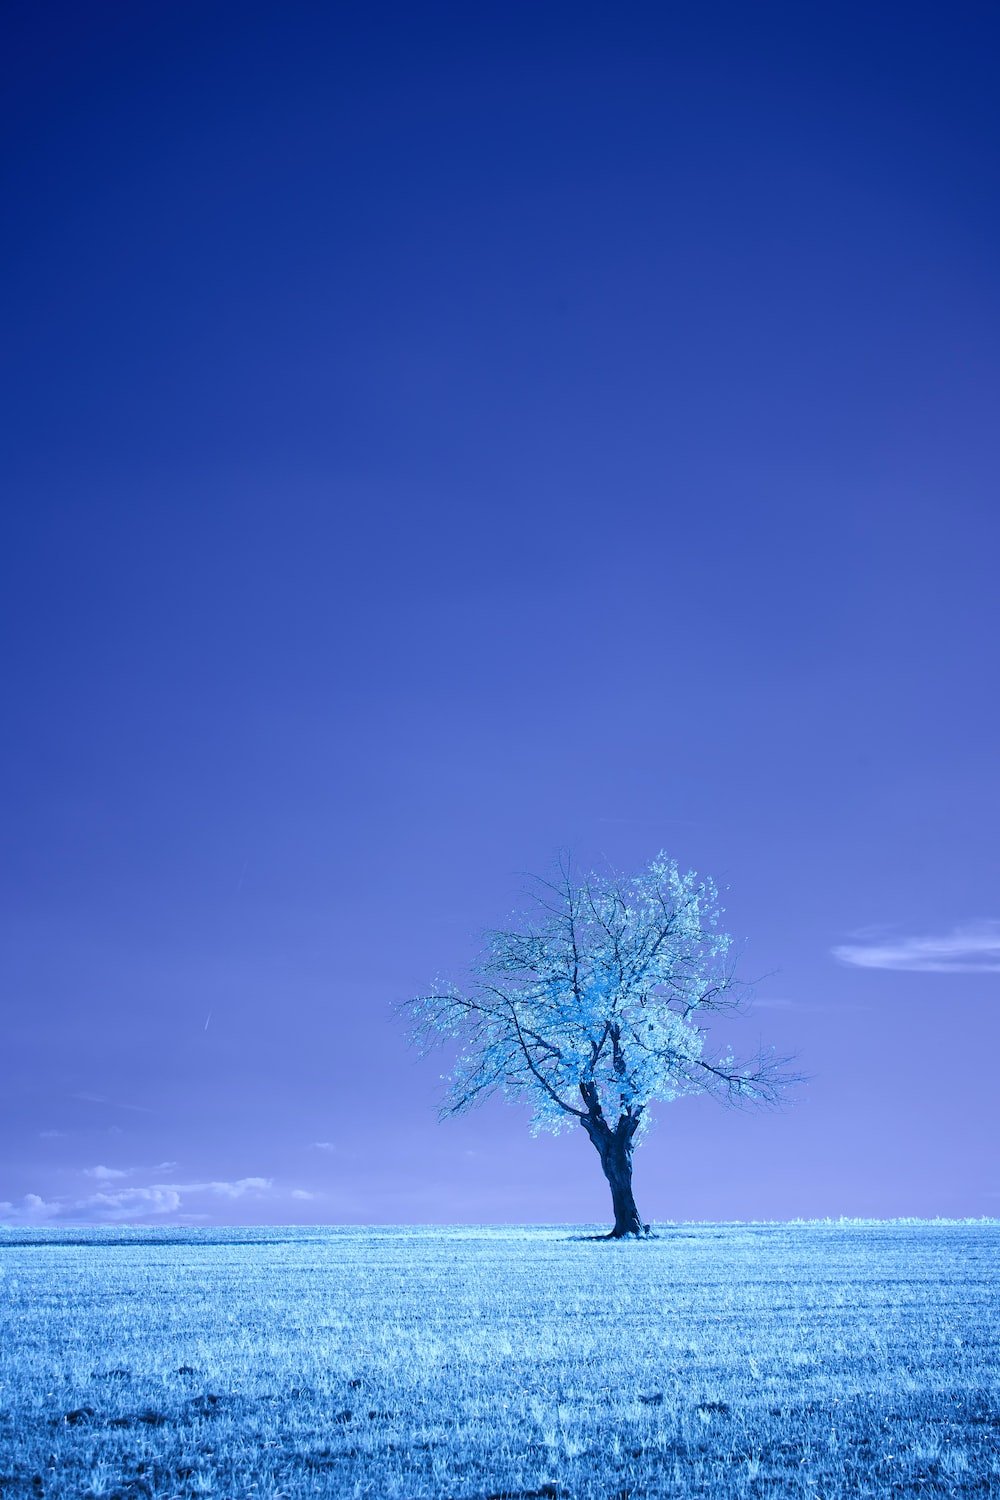 pretty blue trees